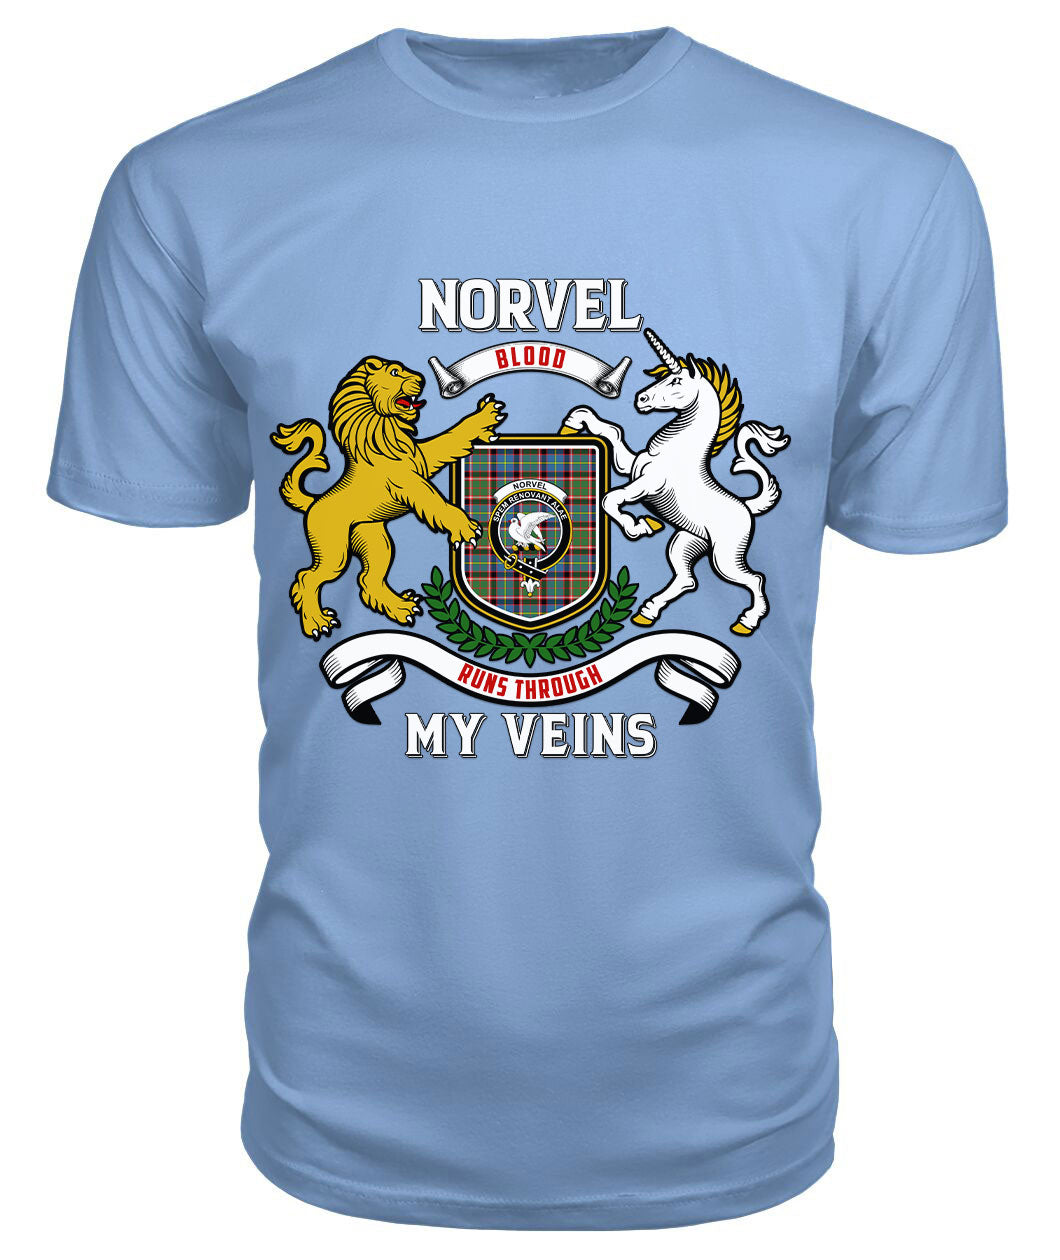 Norvel (or Norvill) Tartan Crest 2D T-shirt - Blood Runs Through My Veins Style